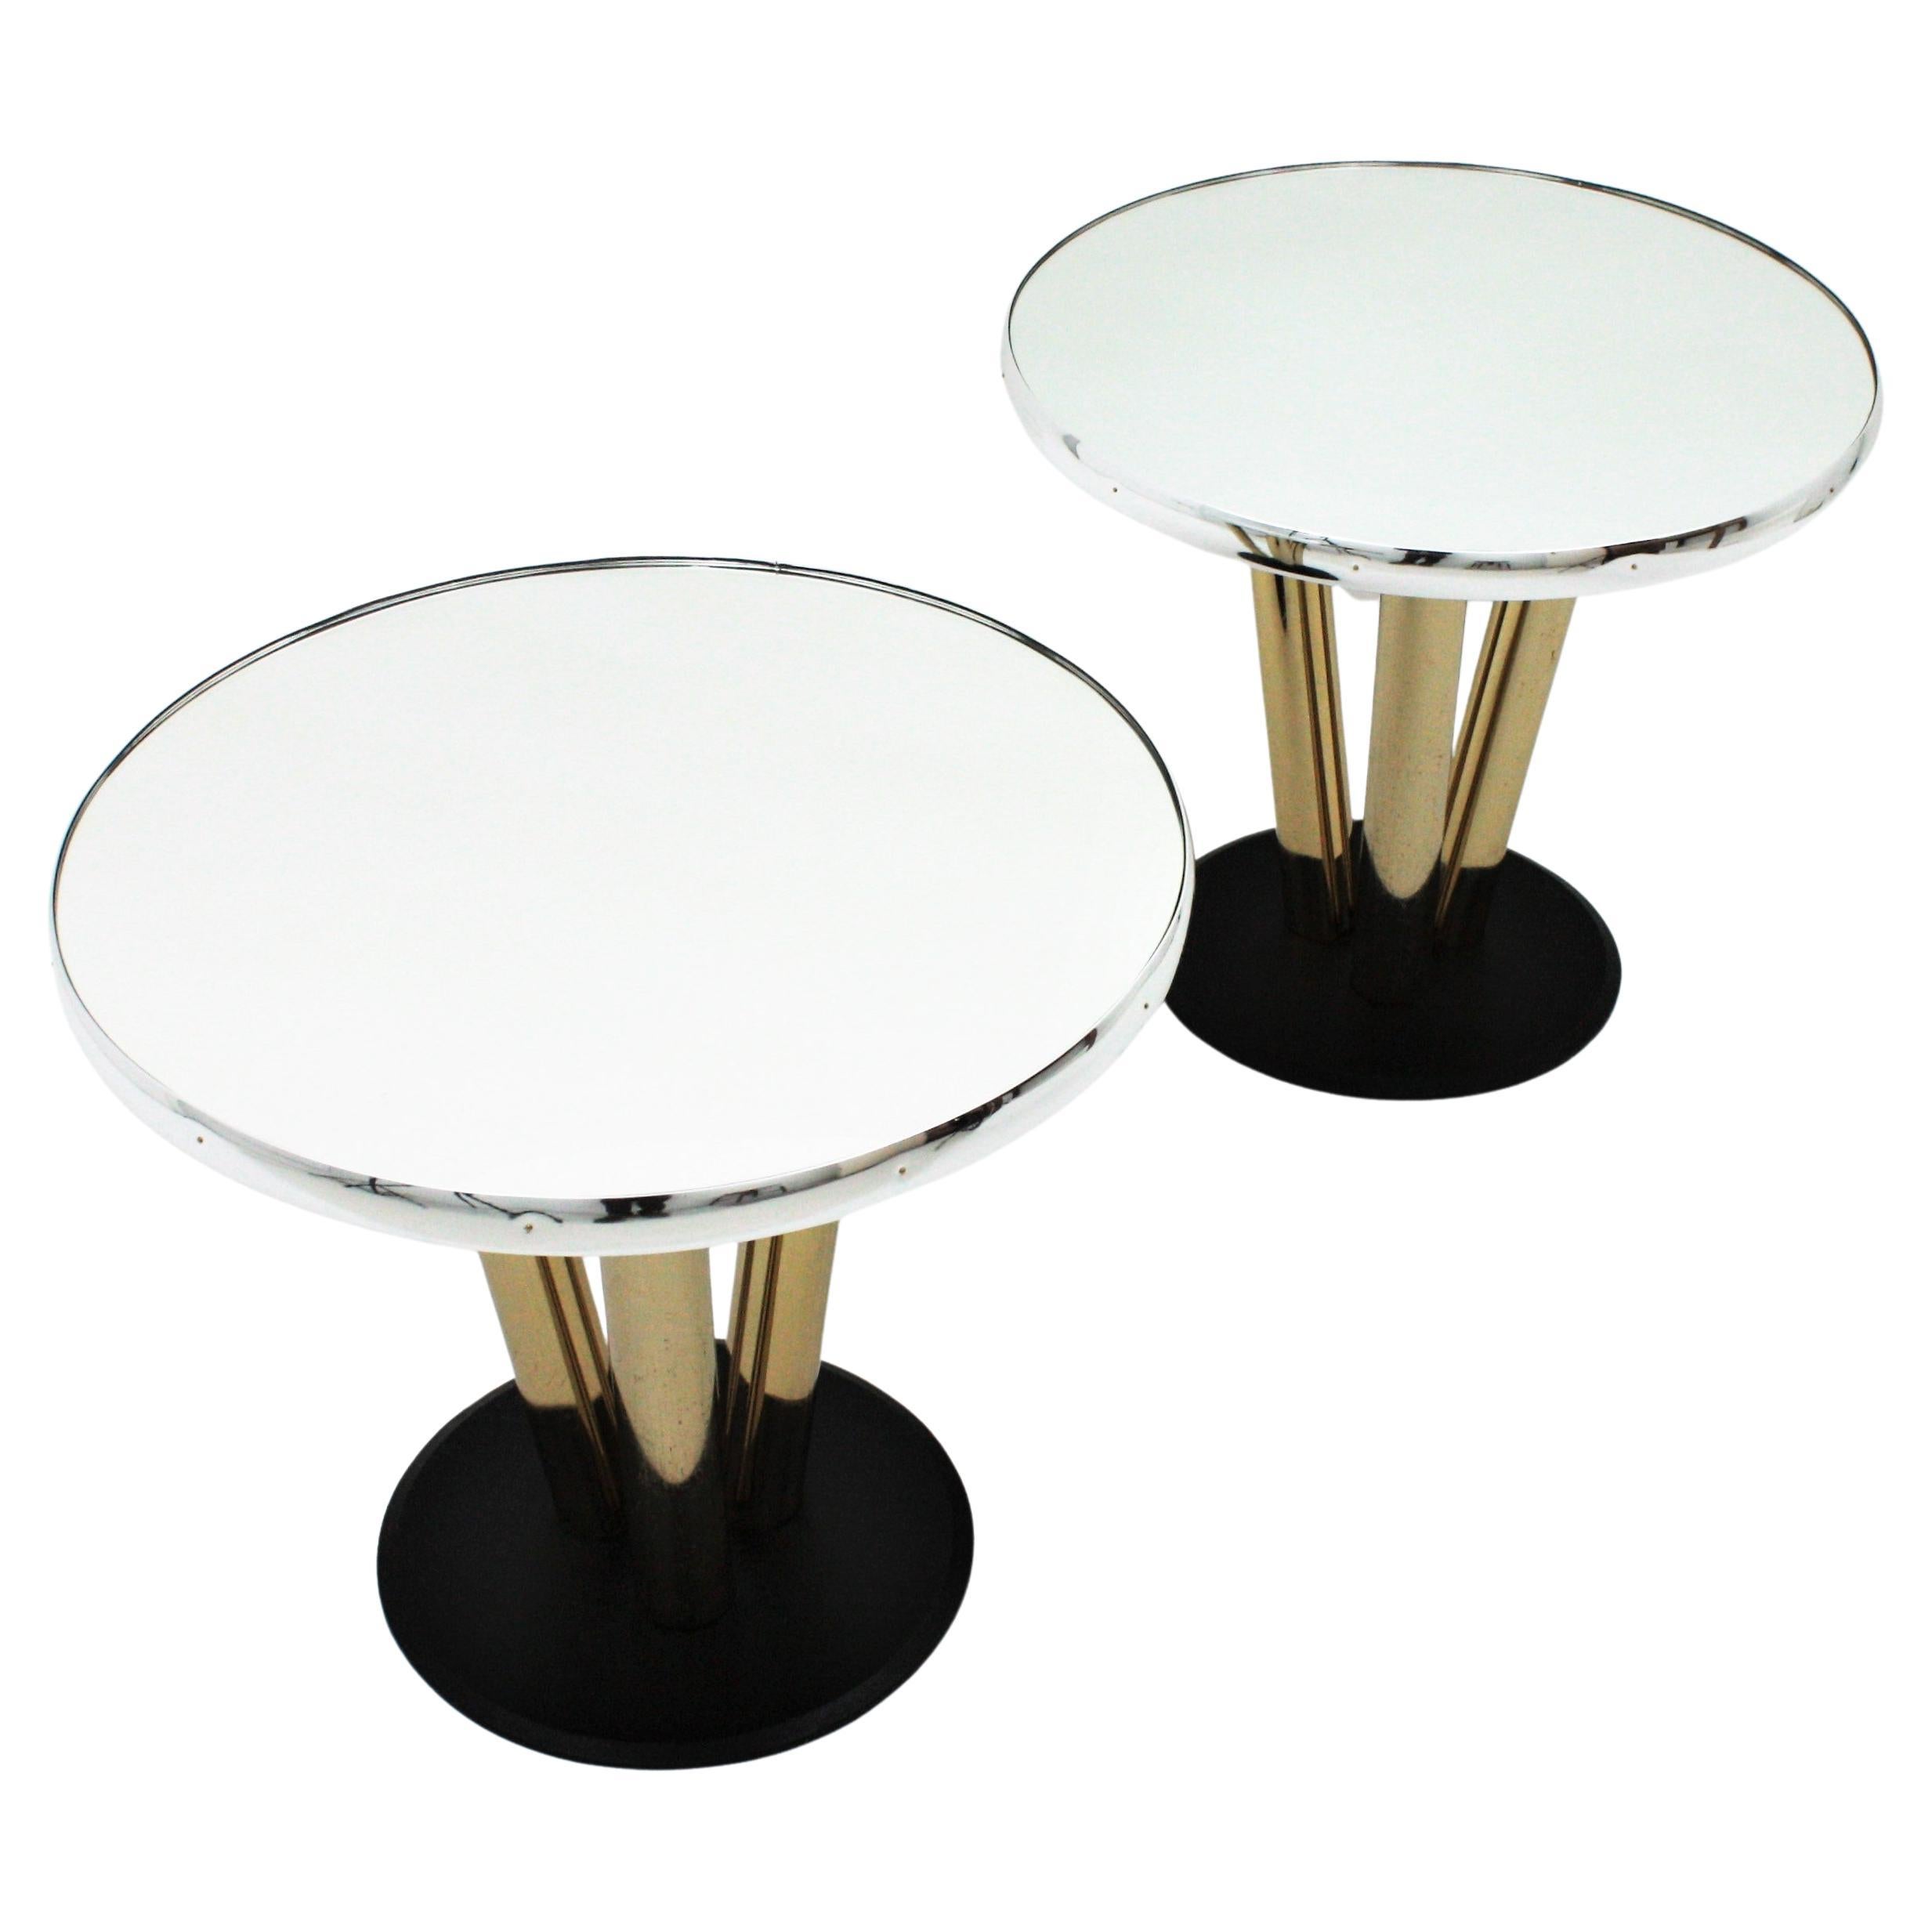 Paar runde Tische aus Messing, Spiegel und schwarzem Lack